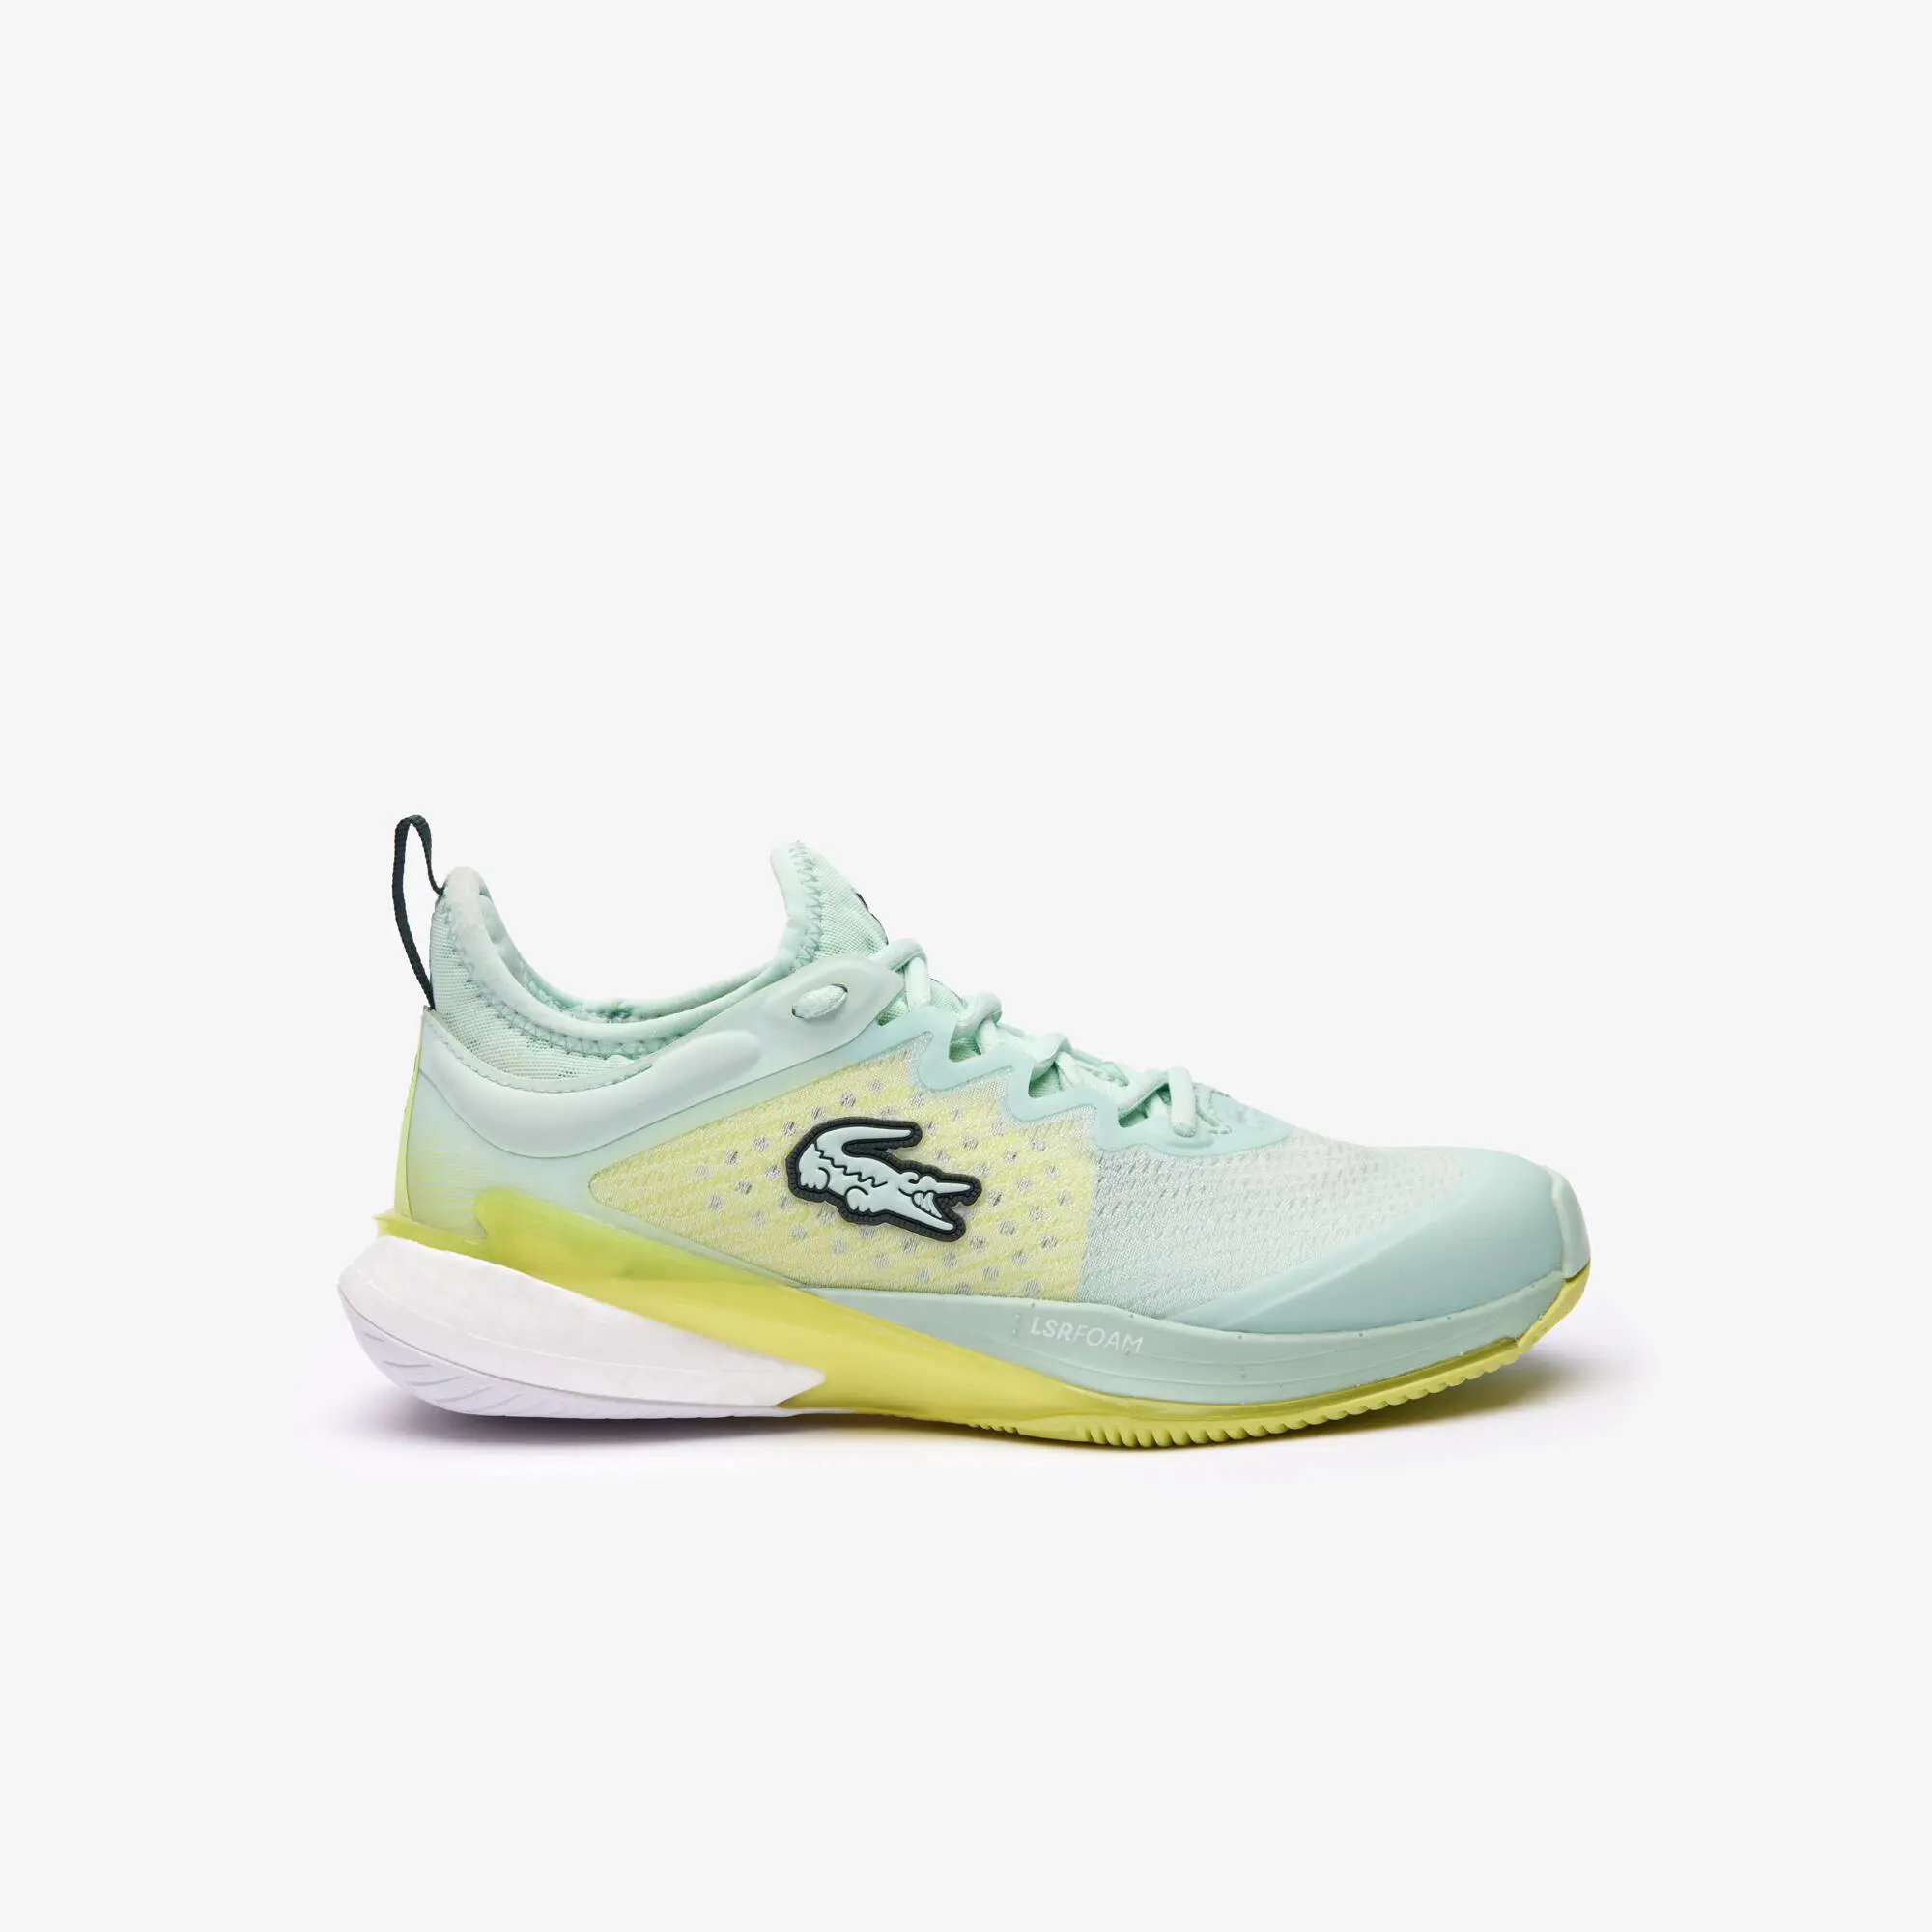 Lacoste Women's AG-LT23 Lite textile tennis shoes. 1